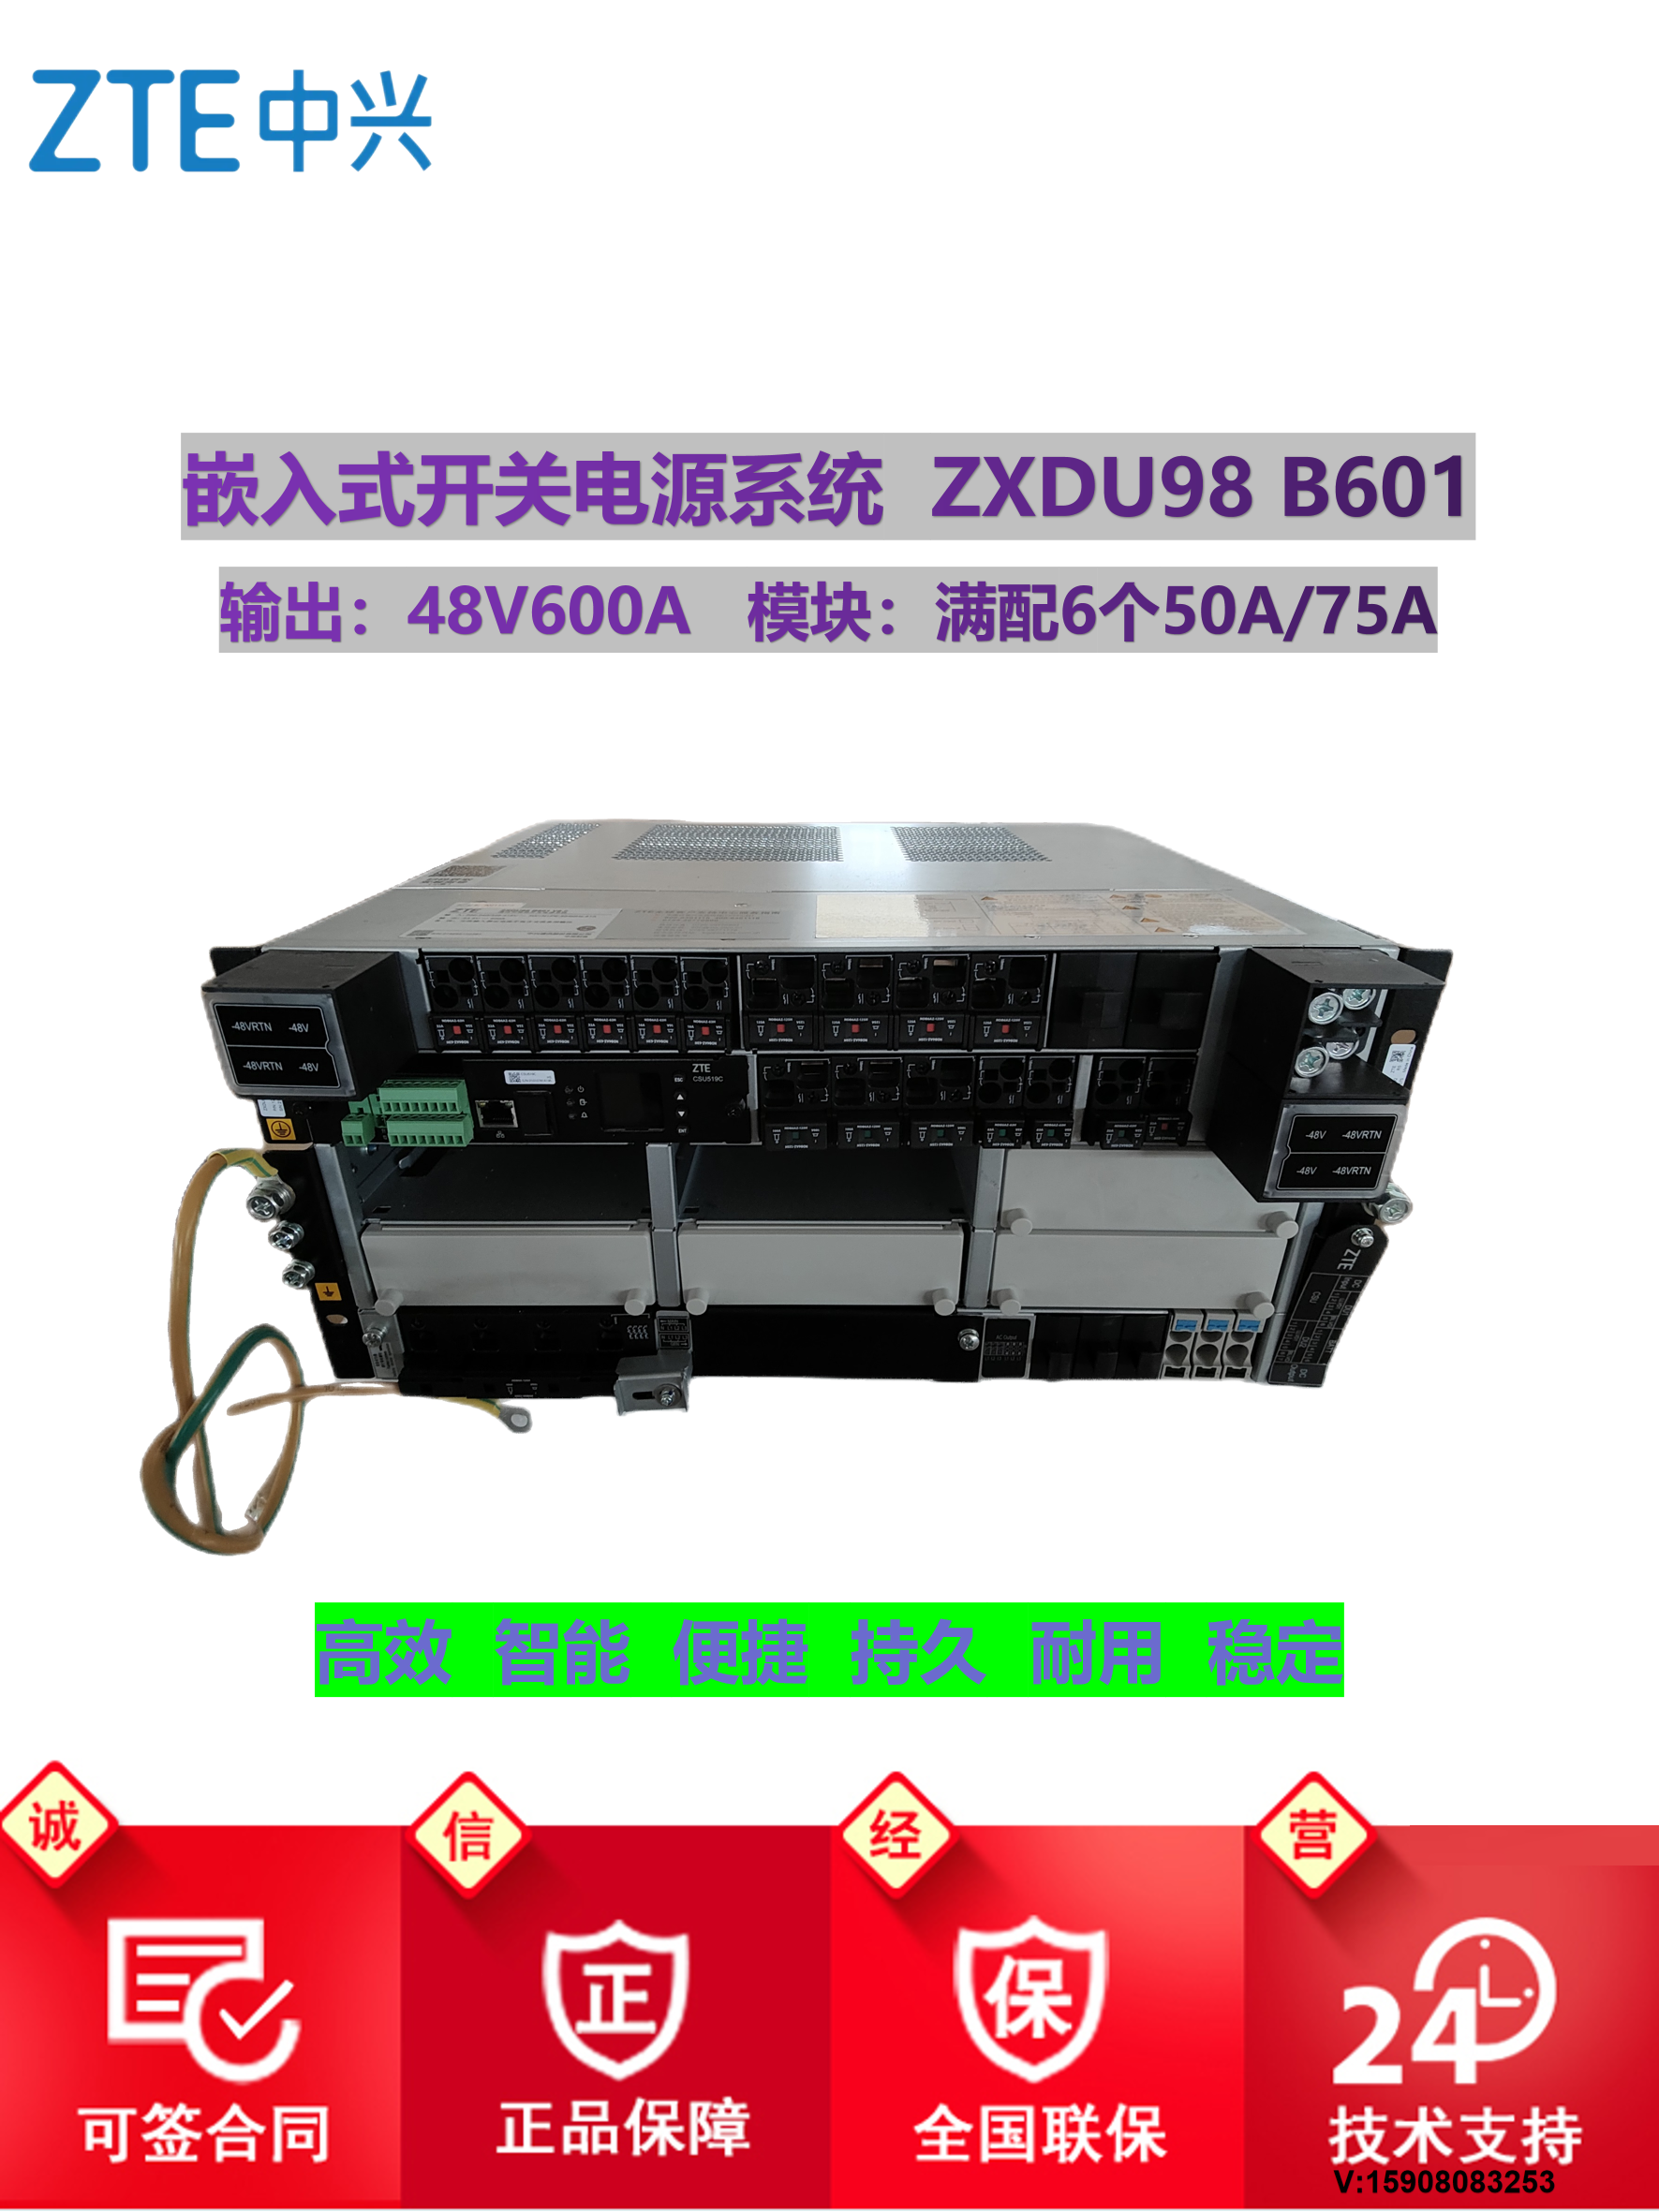 中兴ZXDU98B601 V5.0嵌入式电源系统48V600A配ZXD3000 4000模块5U - 图3